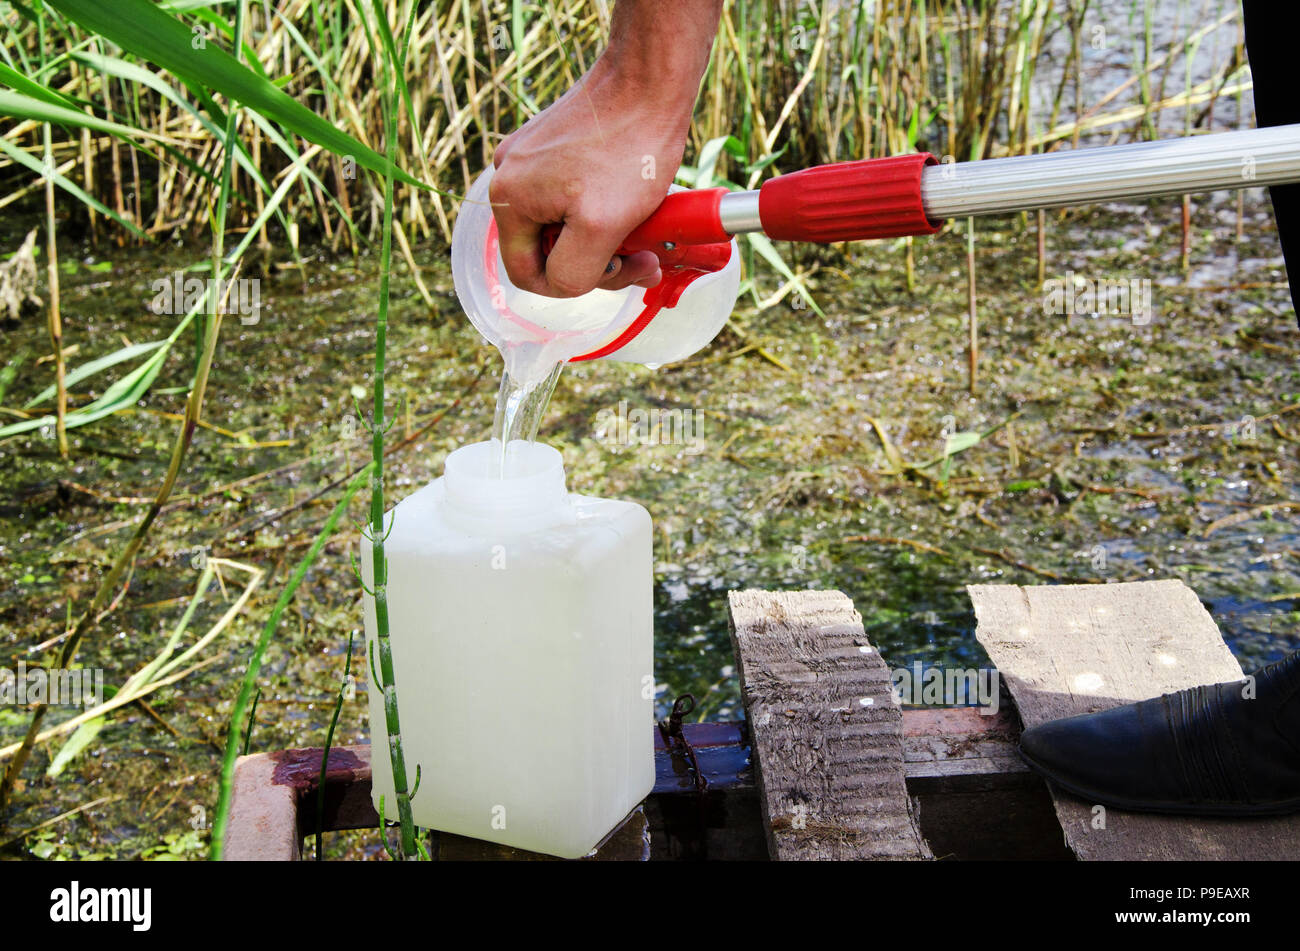 Prelevare campioni di acqua per le prove di laboratorio. Il concetto - analisi della purezza dell'acqua, ambiente, ecologia Foto Stock